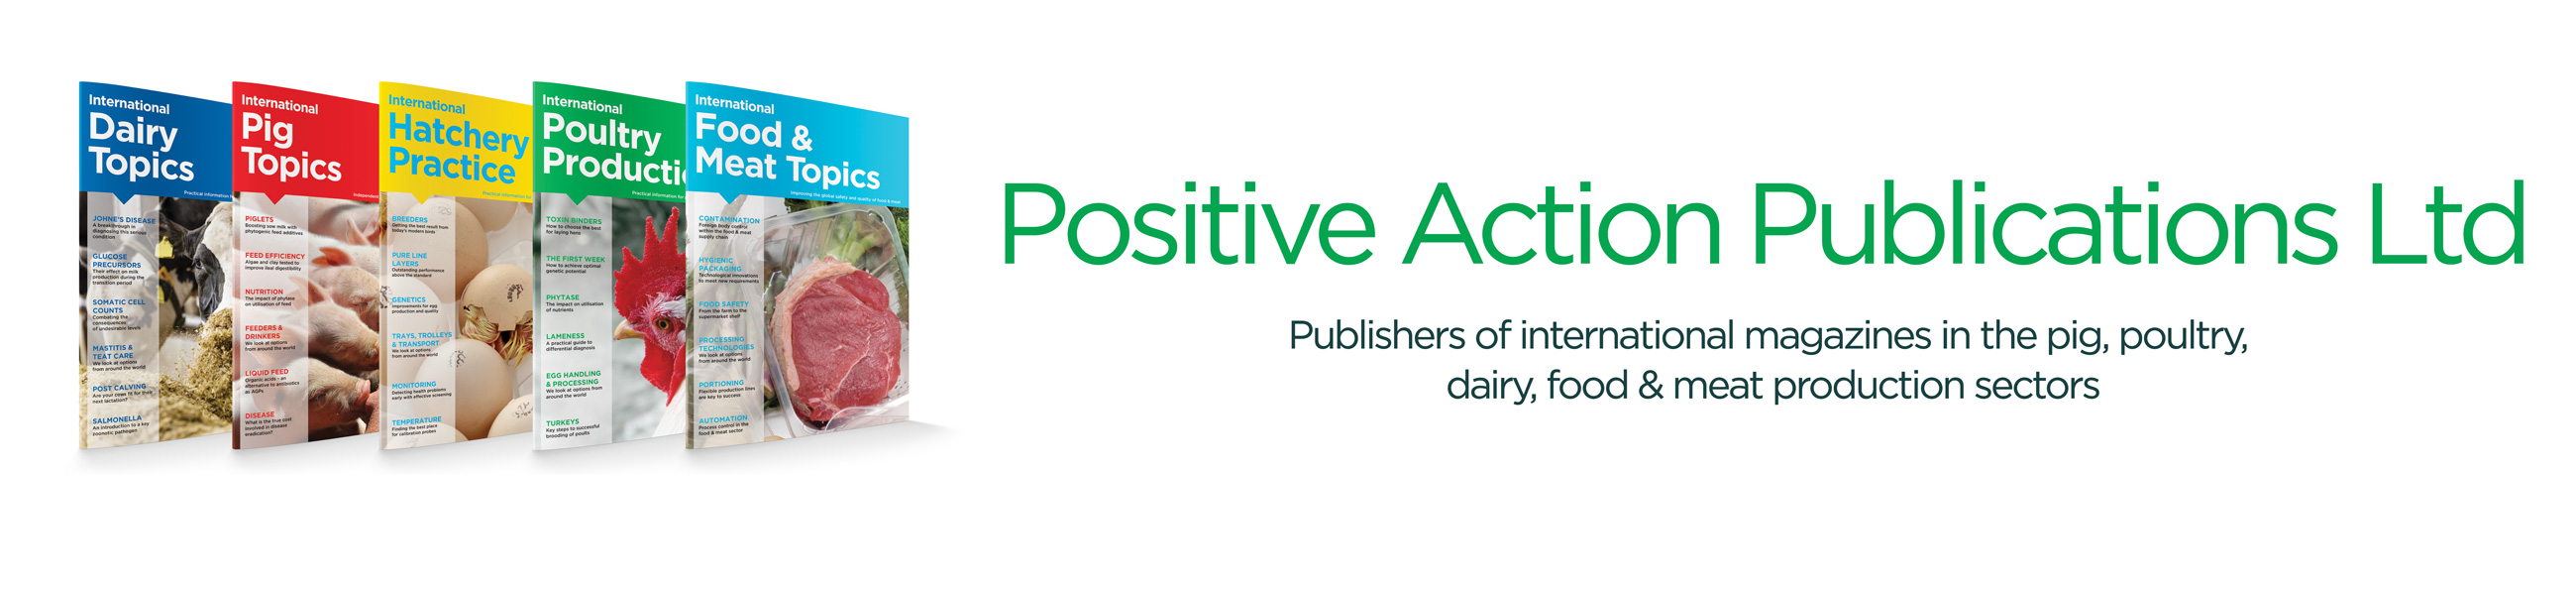 Positive Action Publication